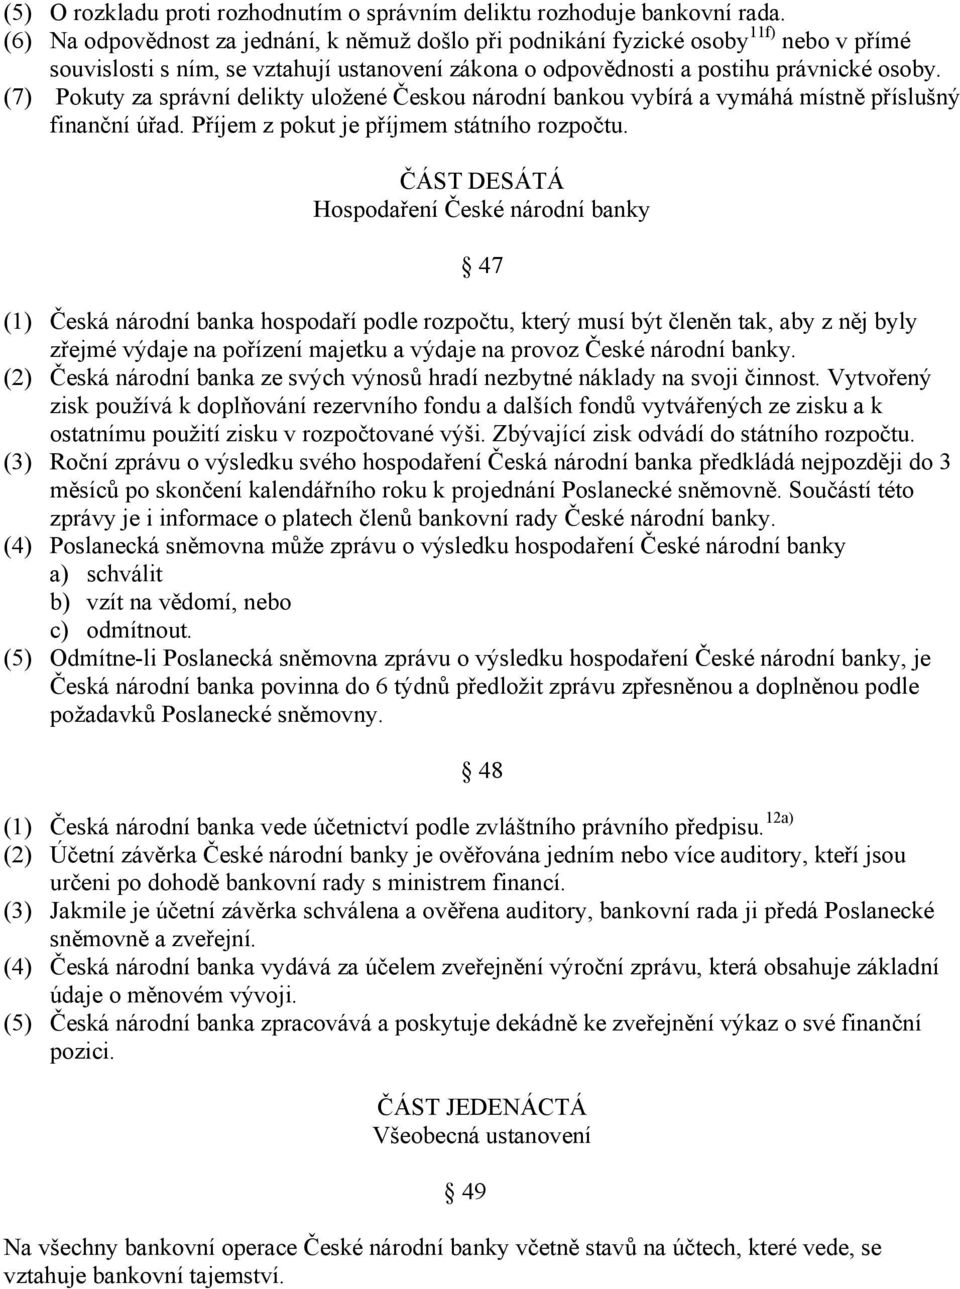 (7) Pokuty za správní delikty uložené Českou národní bankou vybírá a vymáhá místně příslušný finanční úřad. Příjem z pokut je příjmem státního rozpočtu.